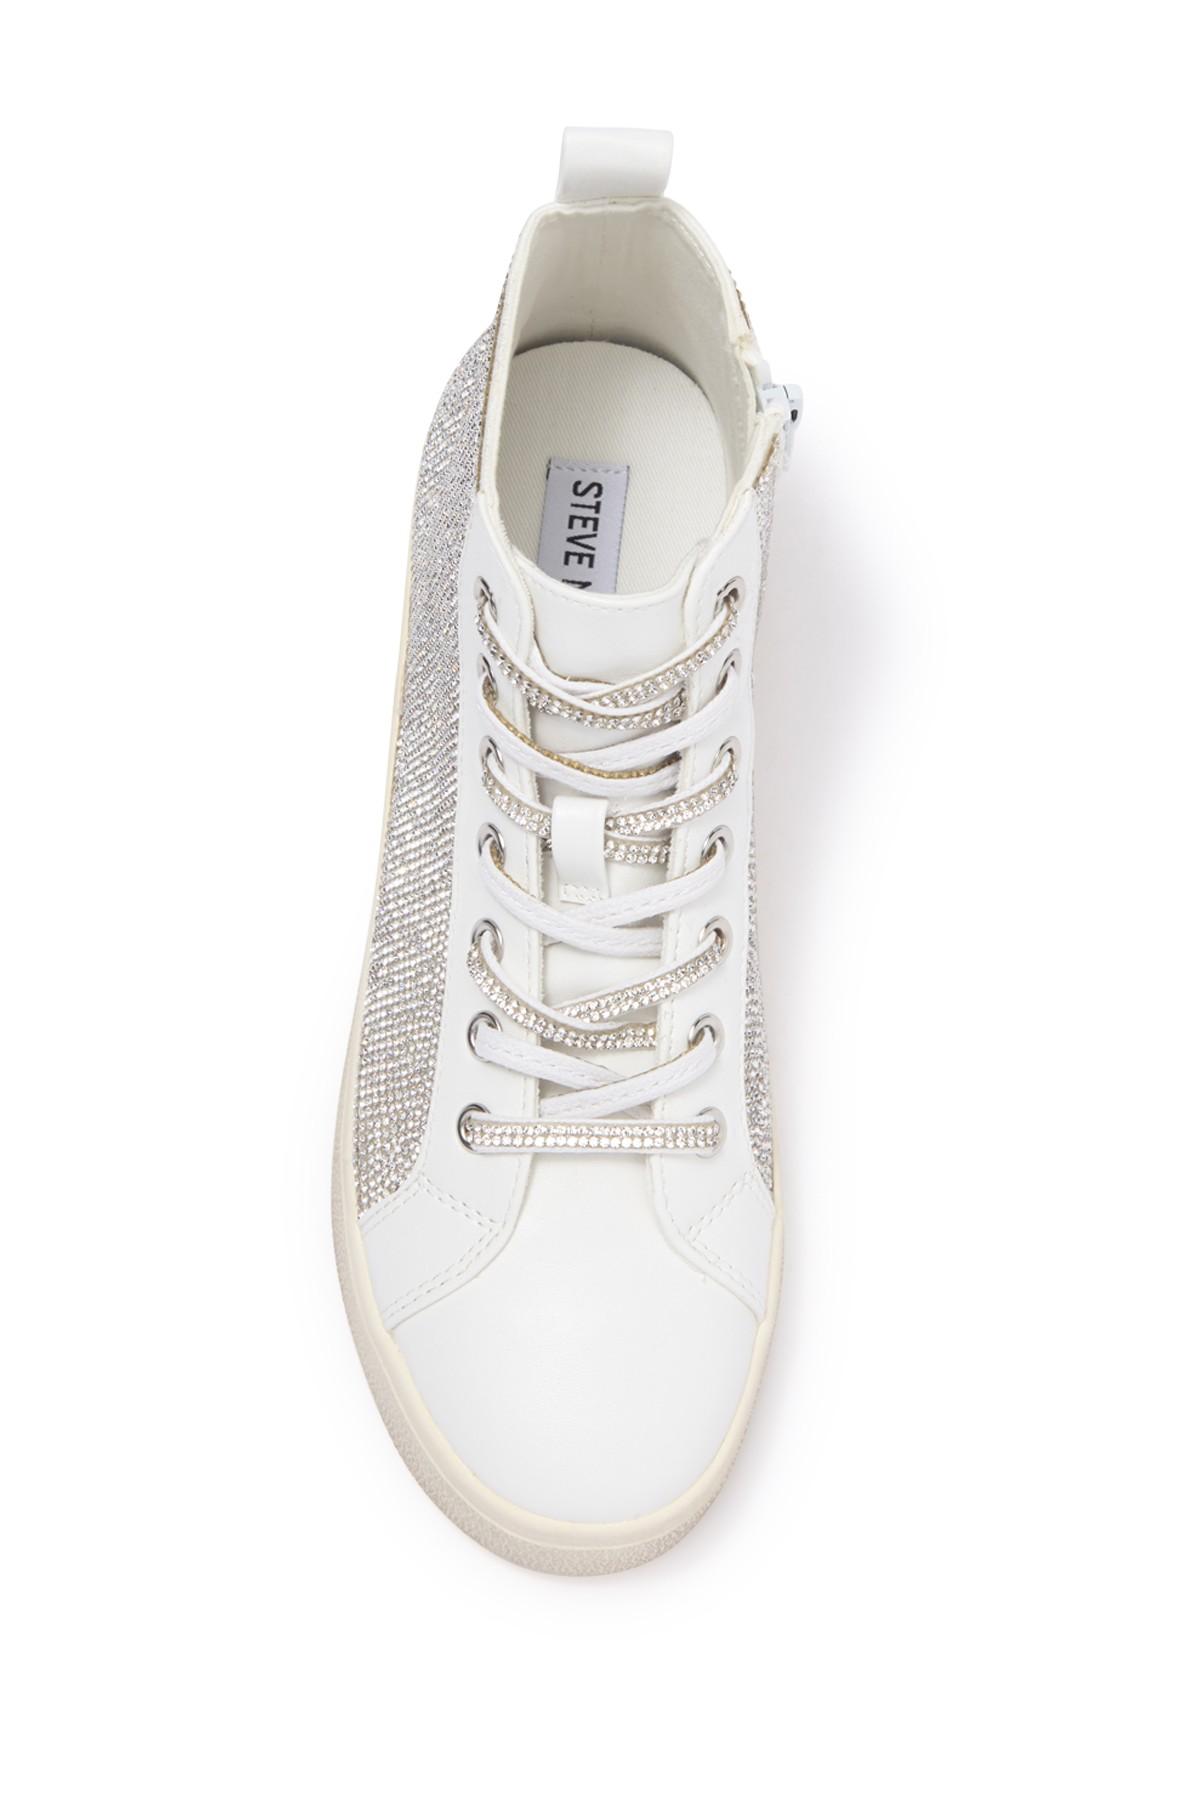 Steve Madden Bondi High Top Sneaker in White | Lyst